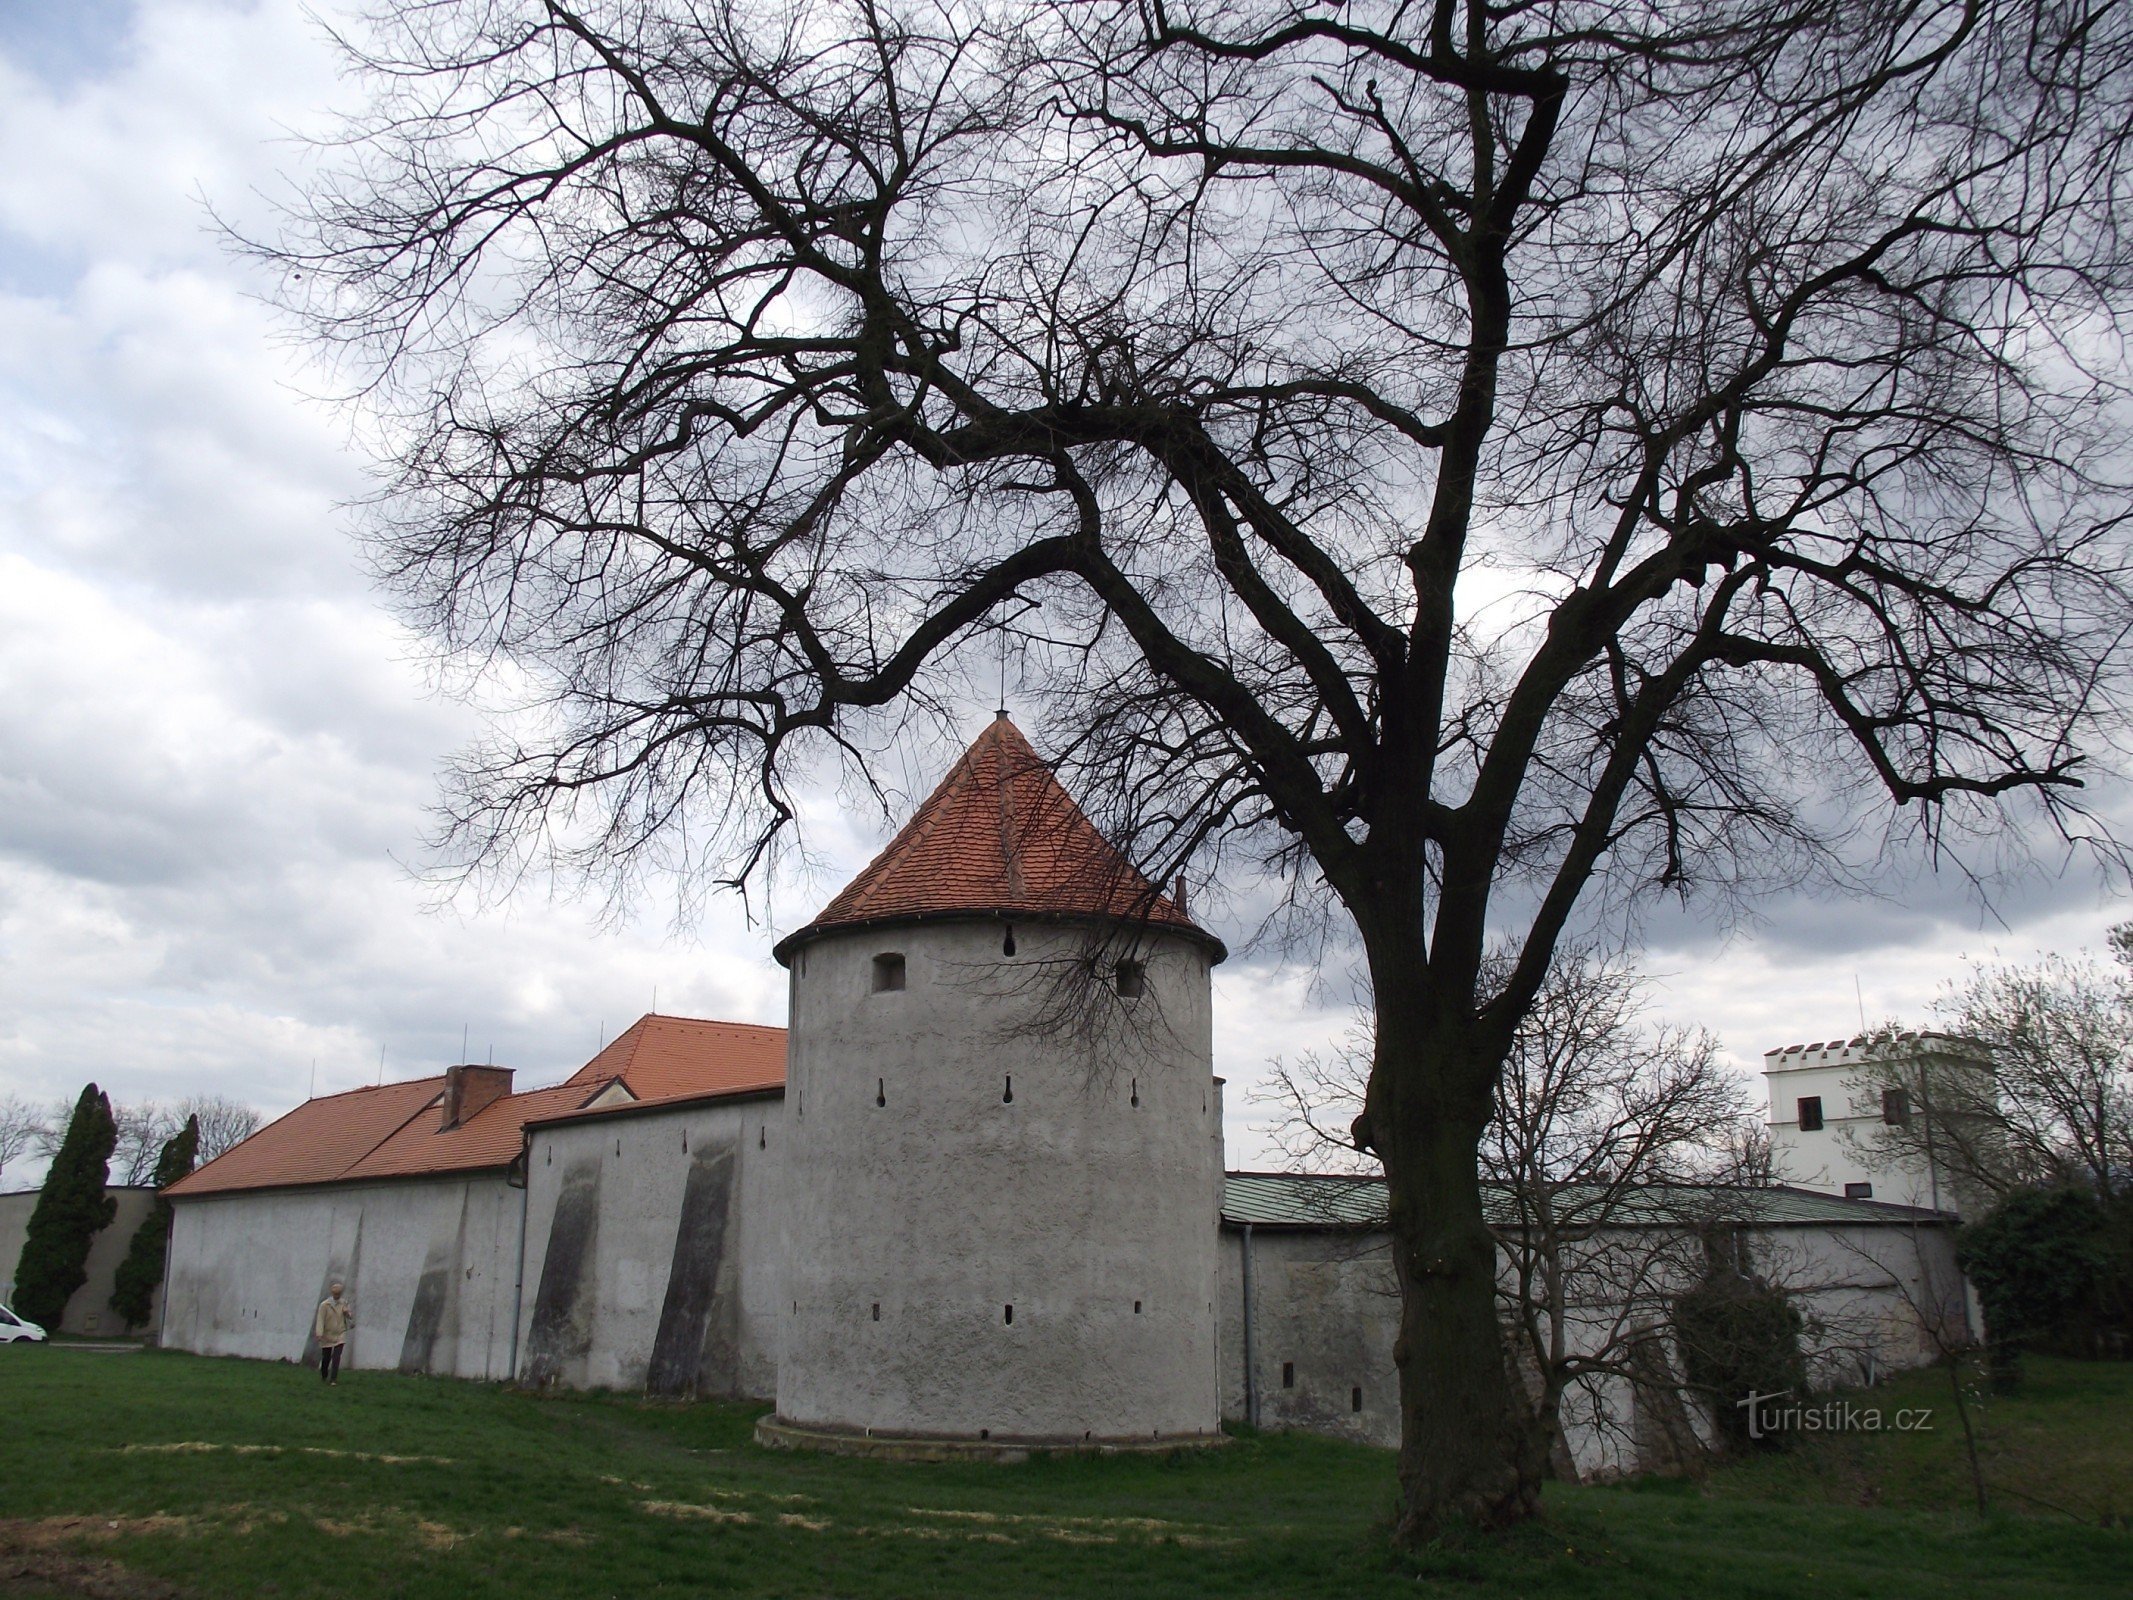 de stadsversterkingen boven het kasteel worden toegeschreven aan de voormalige het kasteel